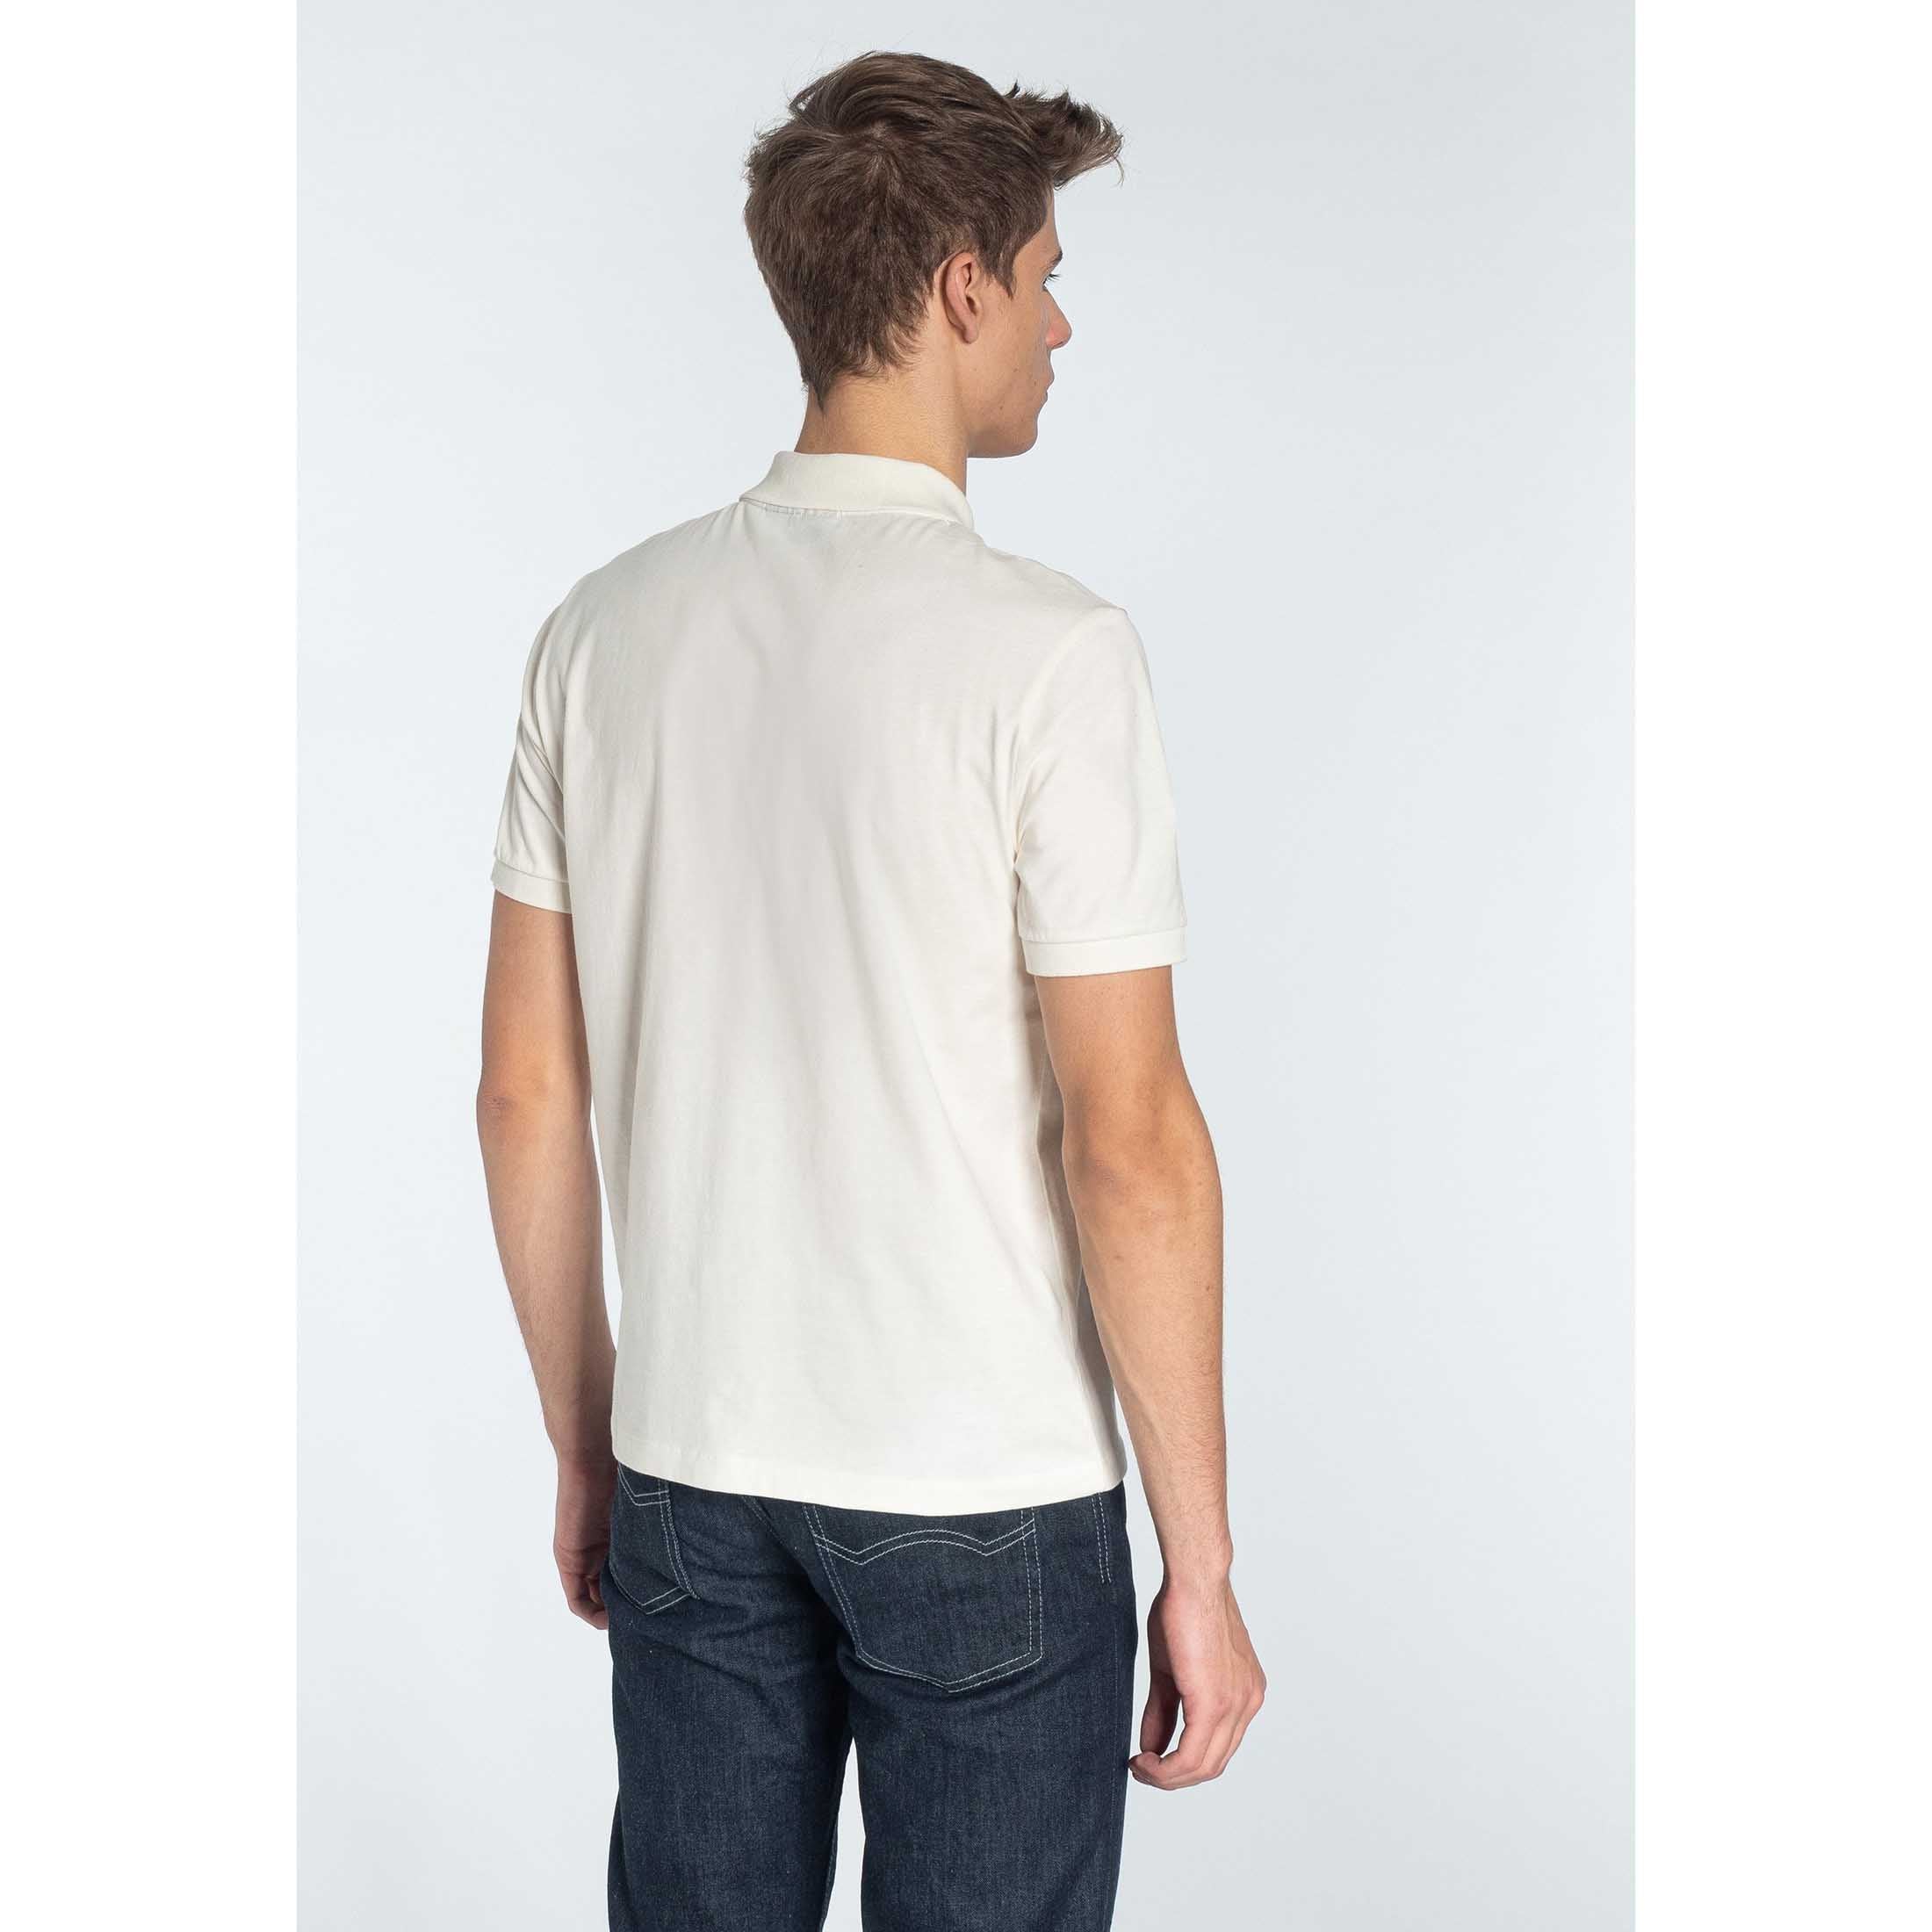 Clyde Polo Shirt - Merc (Last Available)